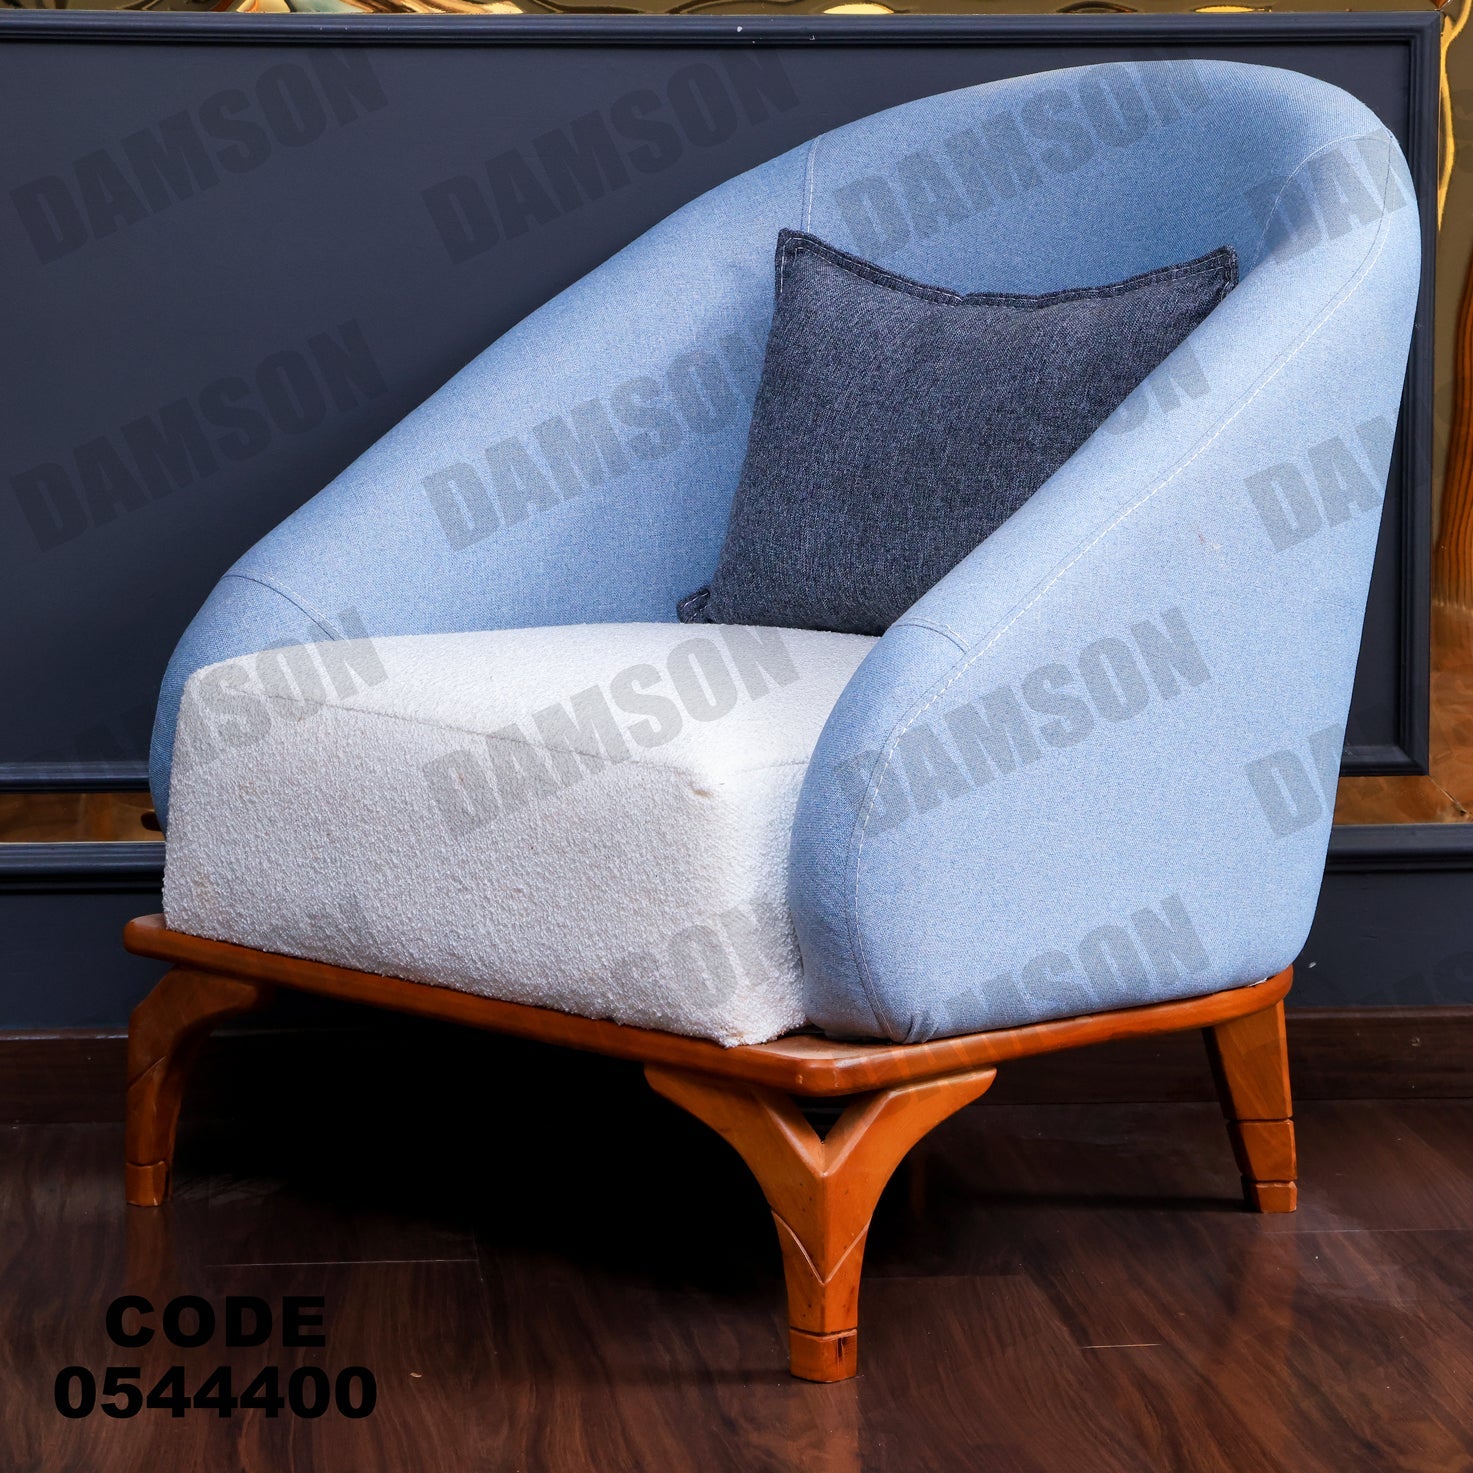 فوتية 1-444 - Damson Furnitureفوتية 1-444